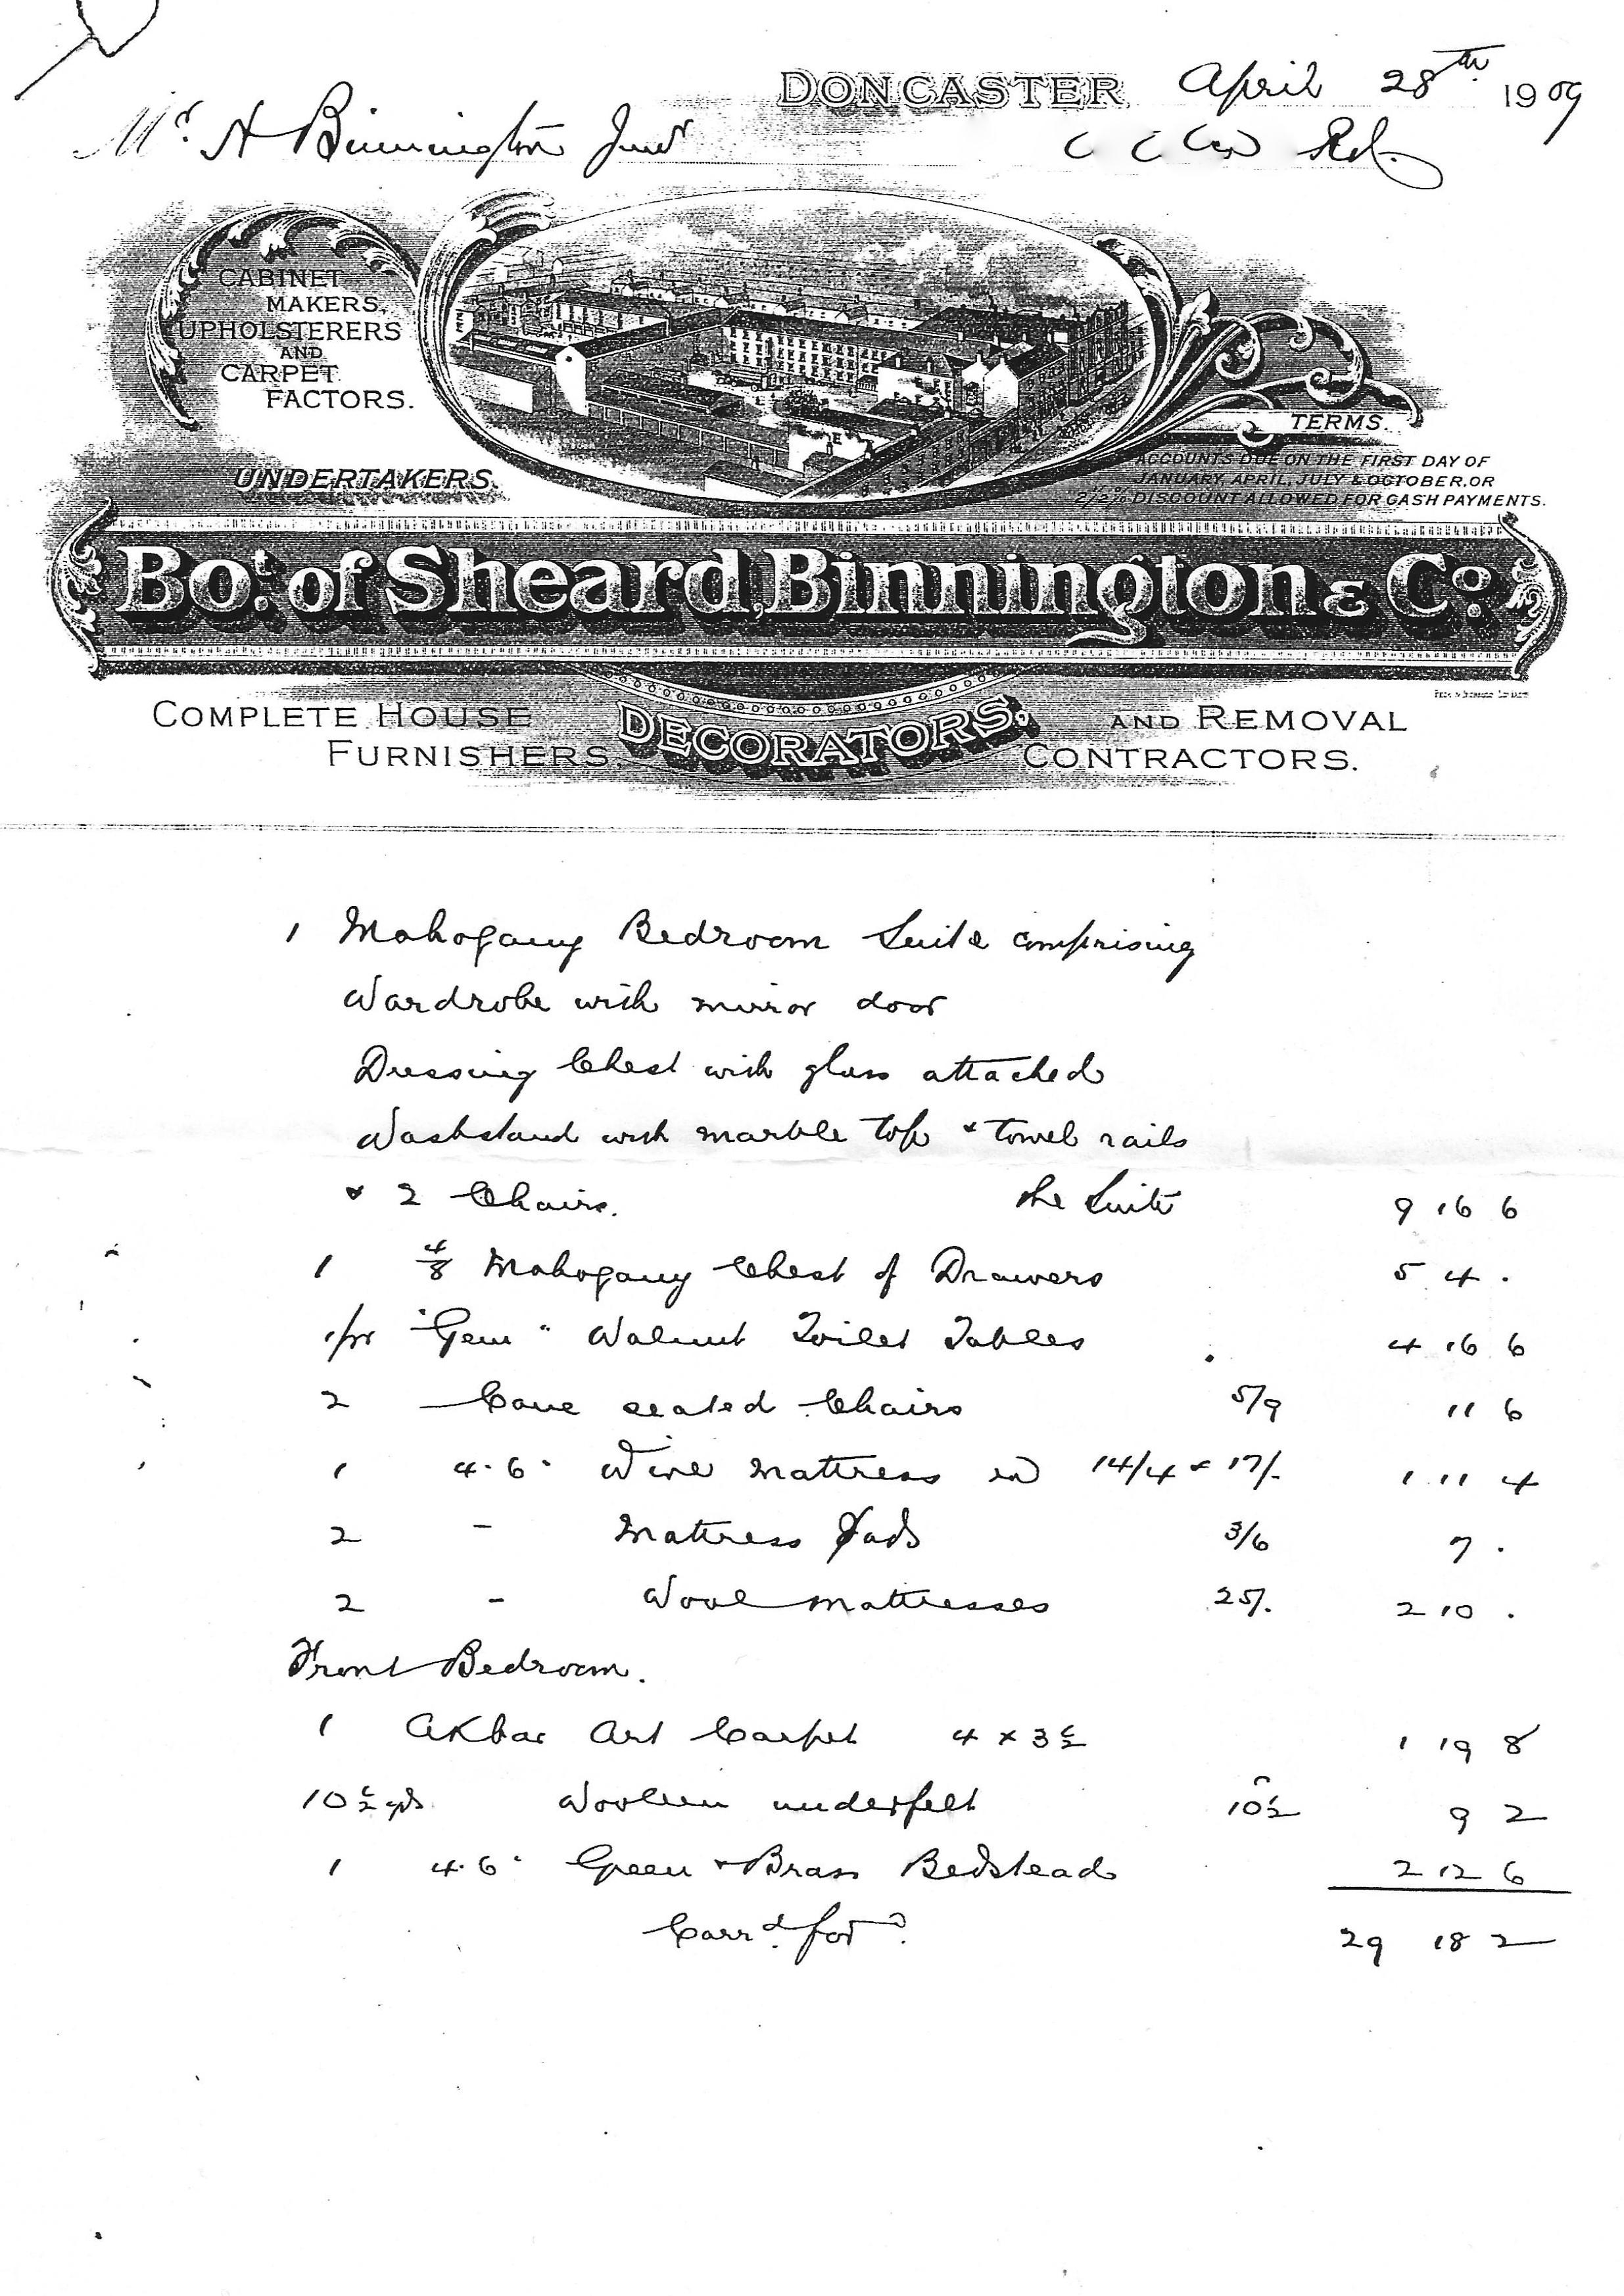 Sheard, Binnington & Co